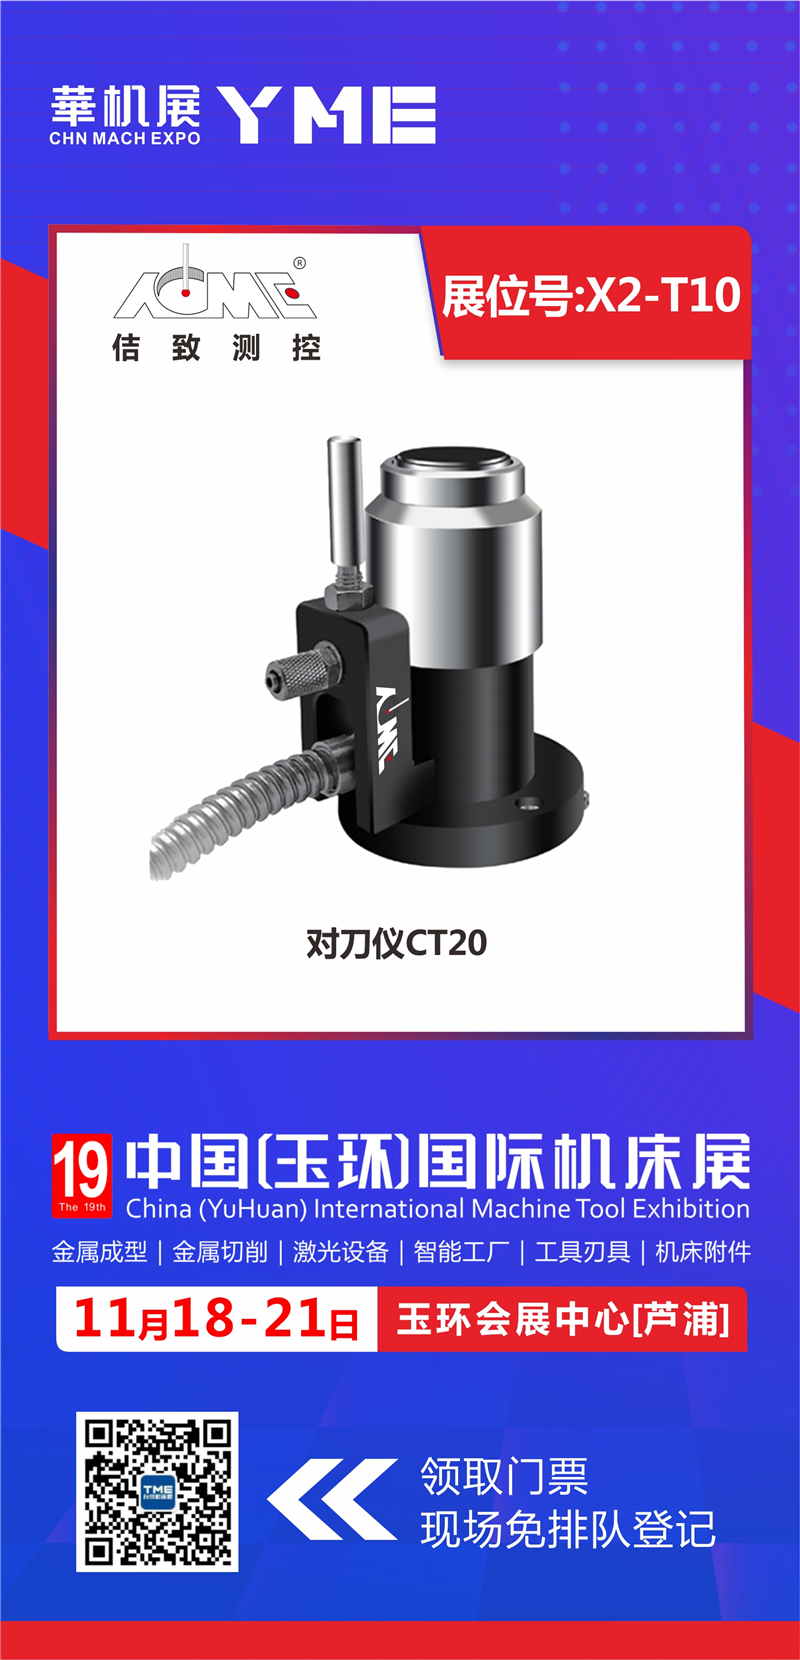 Invitation au 19e Salon international des machines-outils de Chine (Yuhuan) 2022 (1)